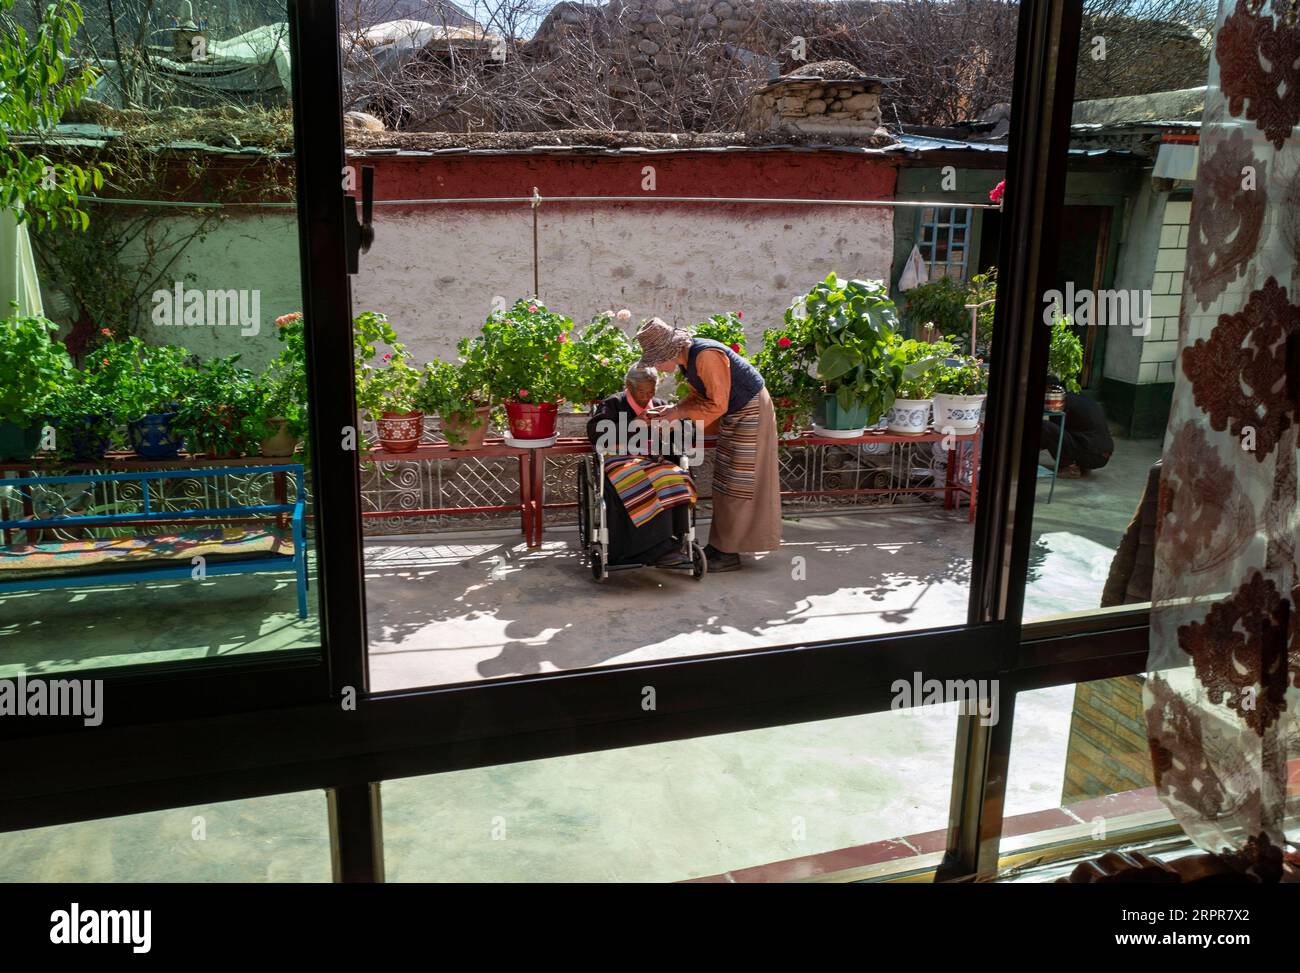 200328 -- LHASA, 28. März 2020 -- Sonam Drolmas Schwiegertochter serviert ihr Buttertee im Reguo Village im Gyaca County in Shannan, im Südwesten Chinas Autonome Region Tibet, 24. März 2020. Am Samstag findet der Tag der Emanzipation der Sklaven statt. Vor einundsechzig Jahren wurden mehr als eine Million Menschen, das sind 90 Prozent der damaligen Bevölkerung der Region, von der feudalen Leibeigenschaft befreit. Sonam Drolma ist eine 109-jährige Dorfbewohnerin im Dorf Reguo in Shannan. Seit ihrer Geburt durchlebte sie ein halbes Jahrhundert voller Wendungen und Leiden als Leibeigene. Als Nachfahre von Leibeigenen Sonam Drolma Stockfoto